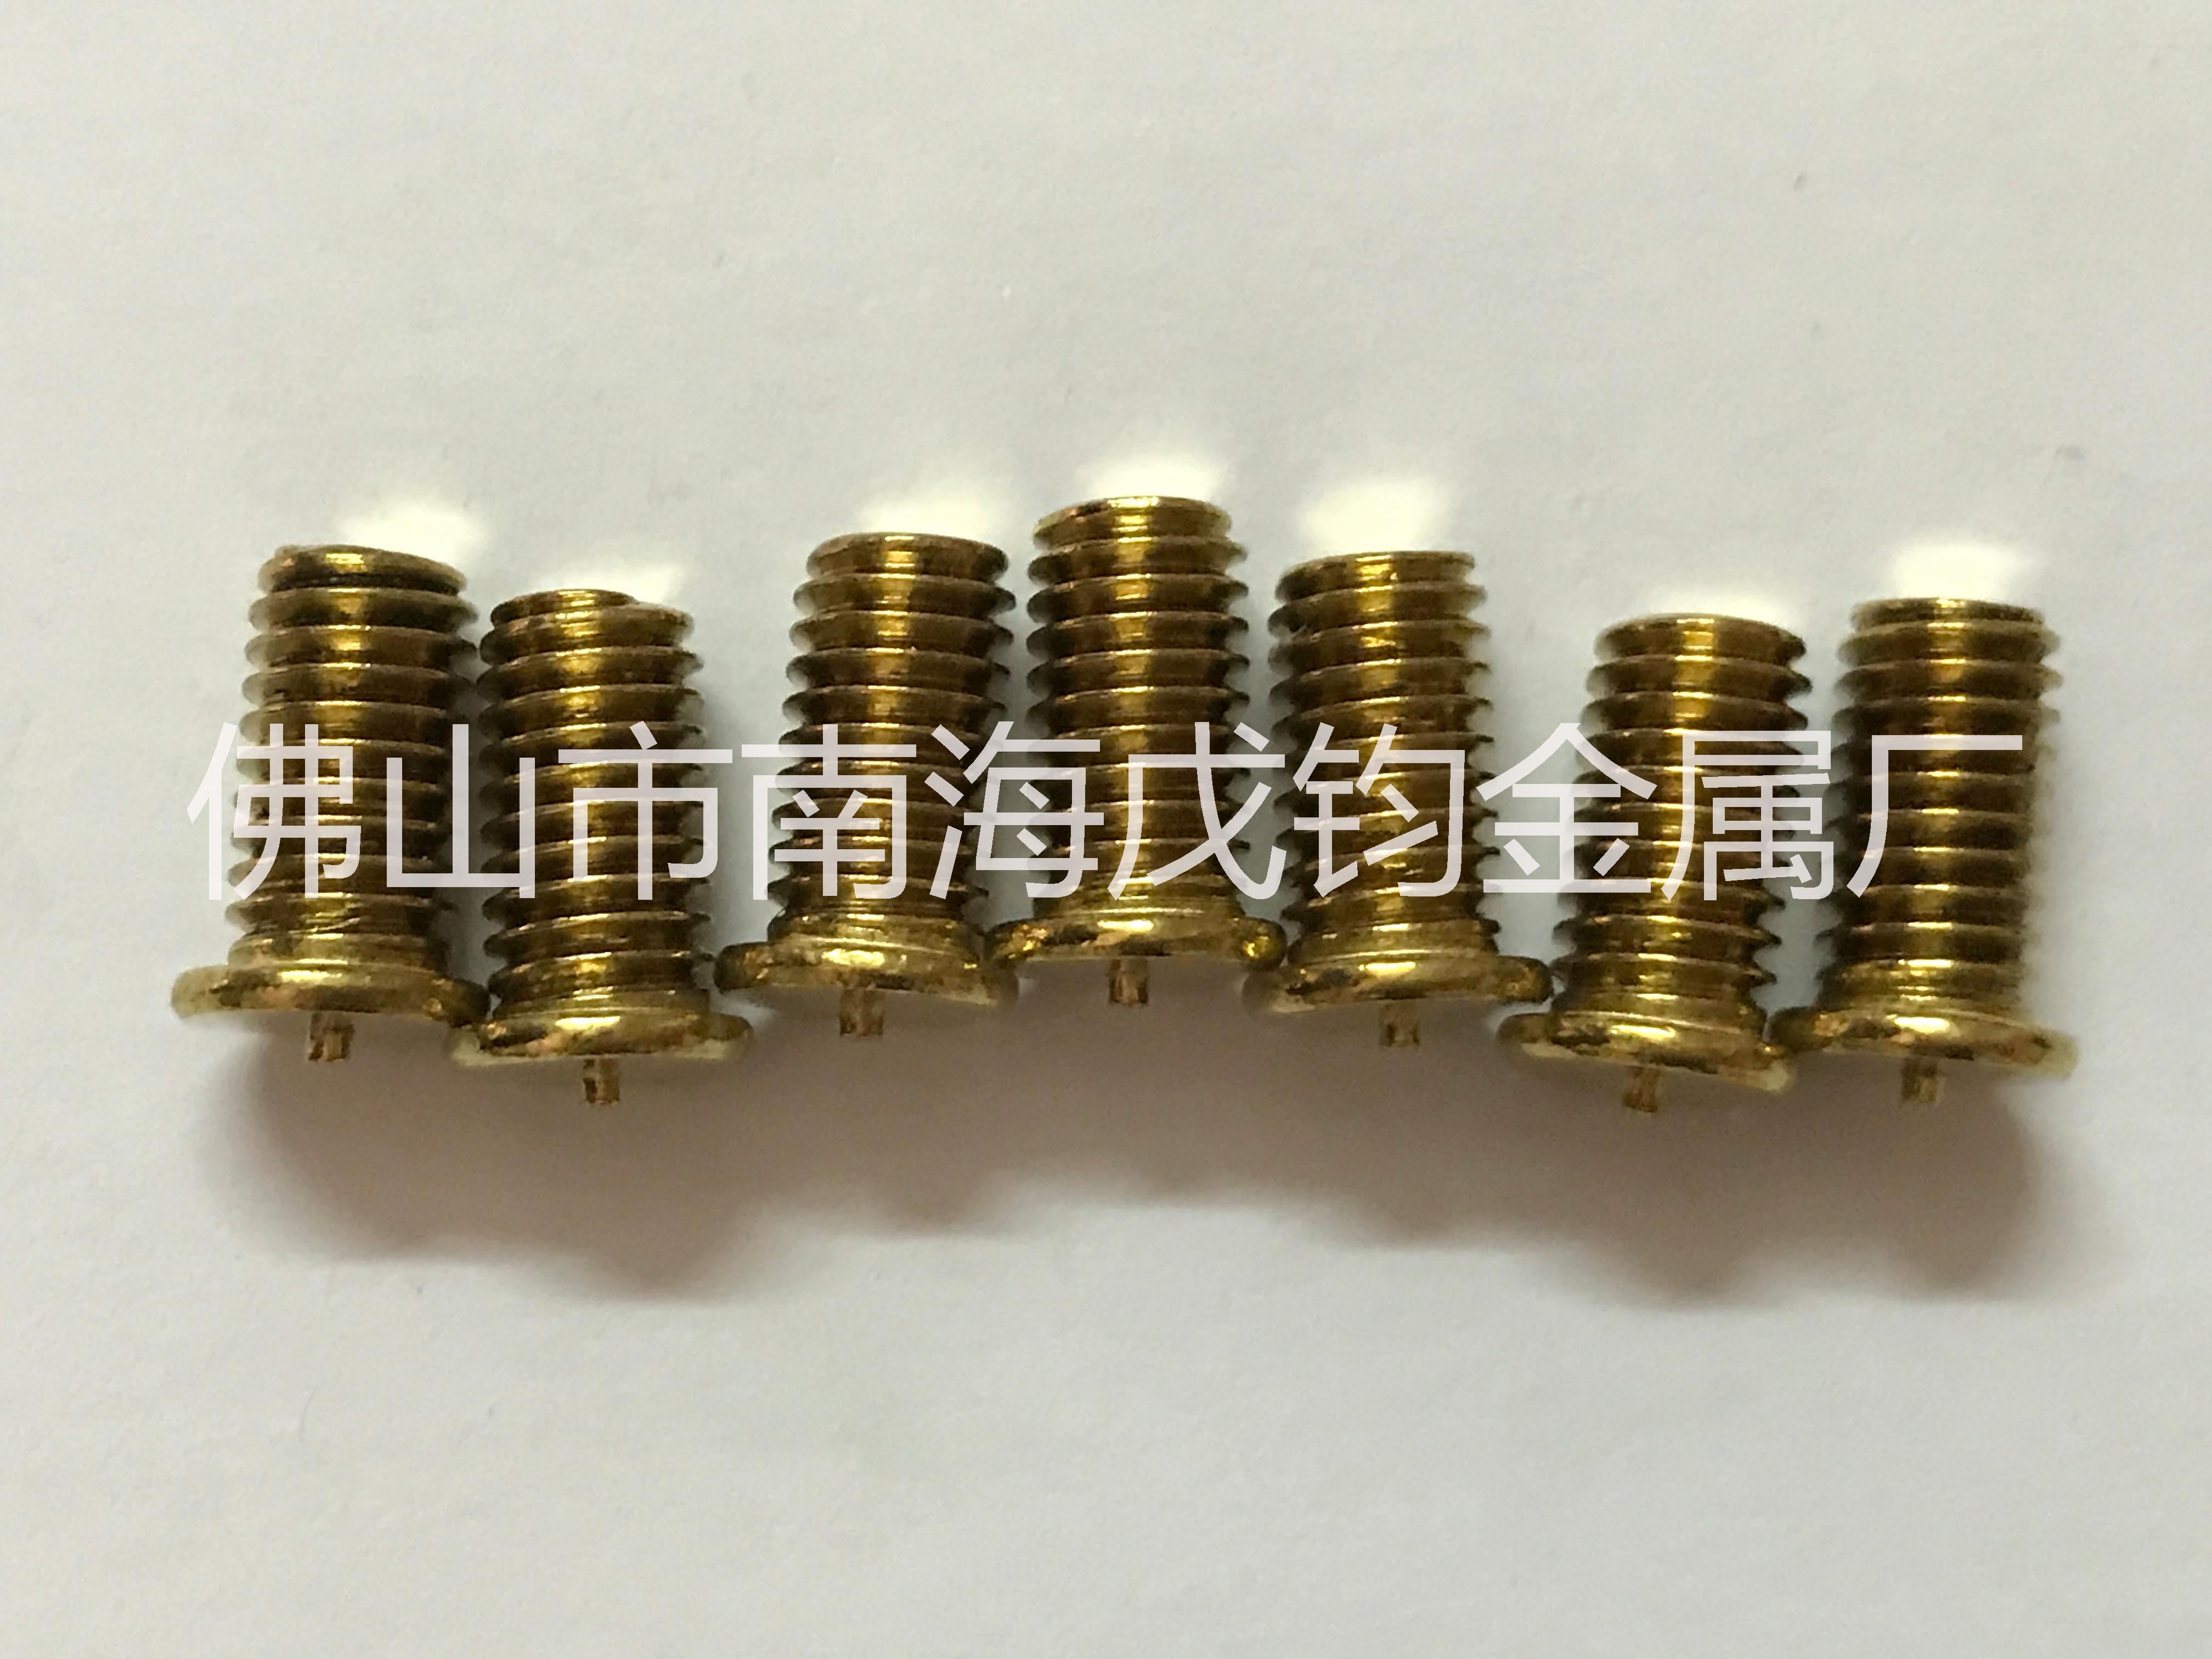 优质黄铜内螺纹种焊螺母 机械种焊螺母 焊接螺母柱批发 黄铜种焊螺钉供应商大量批发